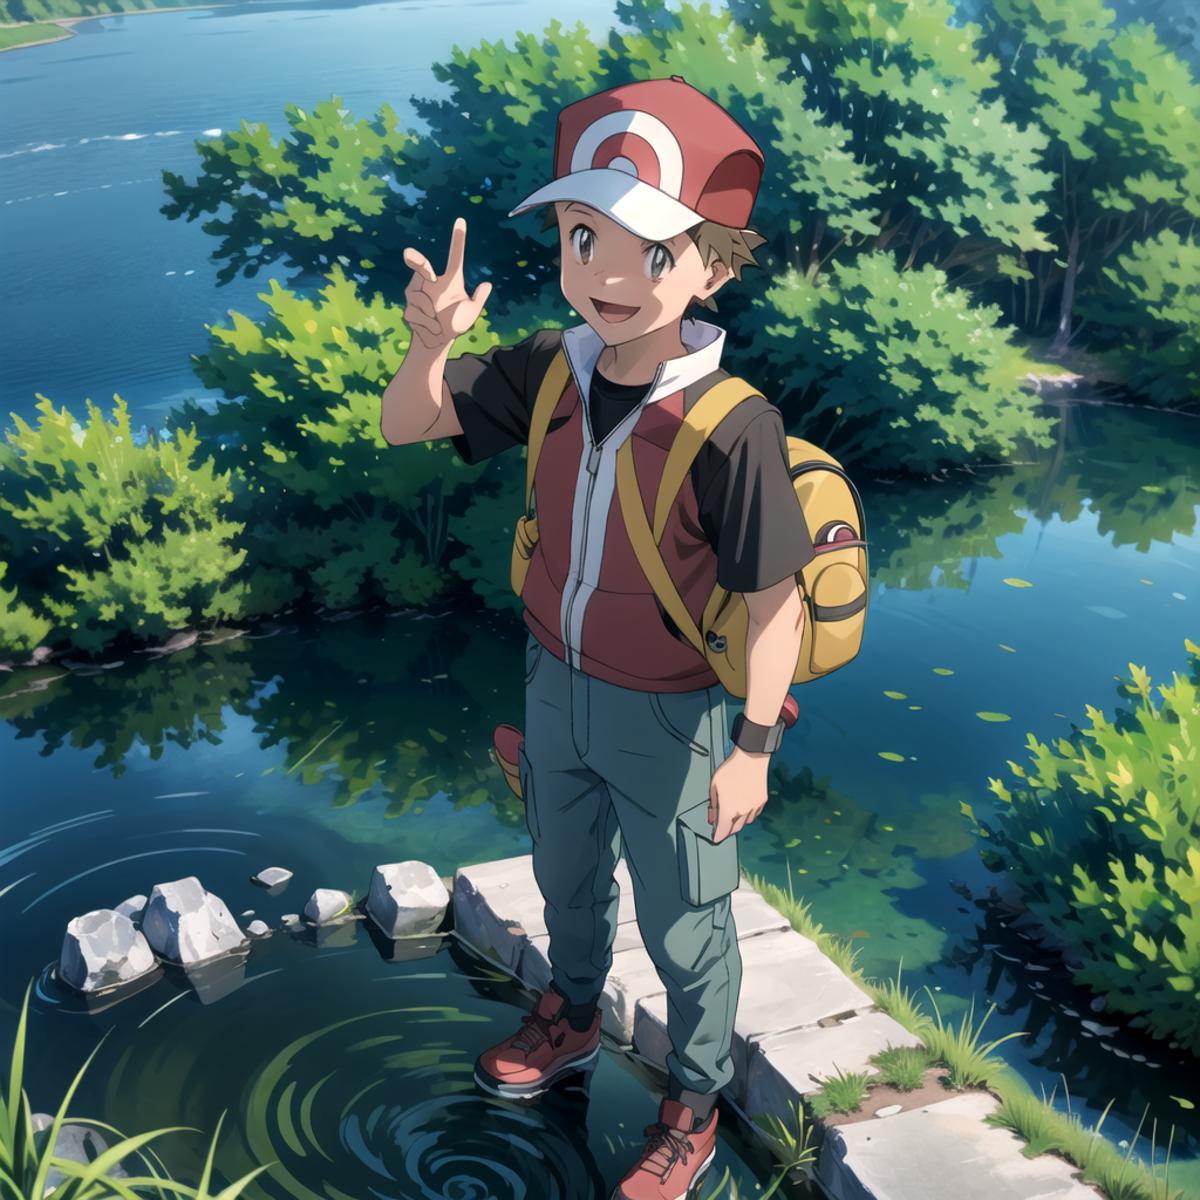 Pokémon Trainer Red image by undi